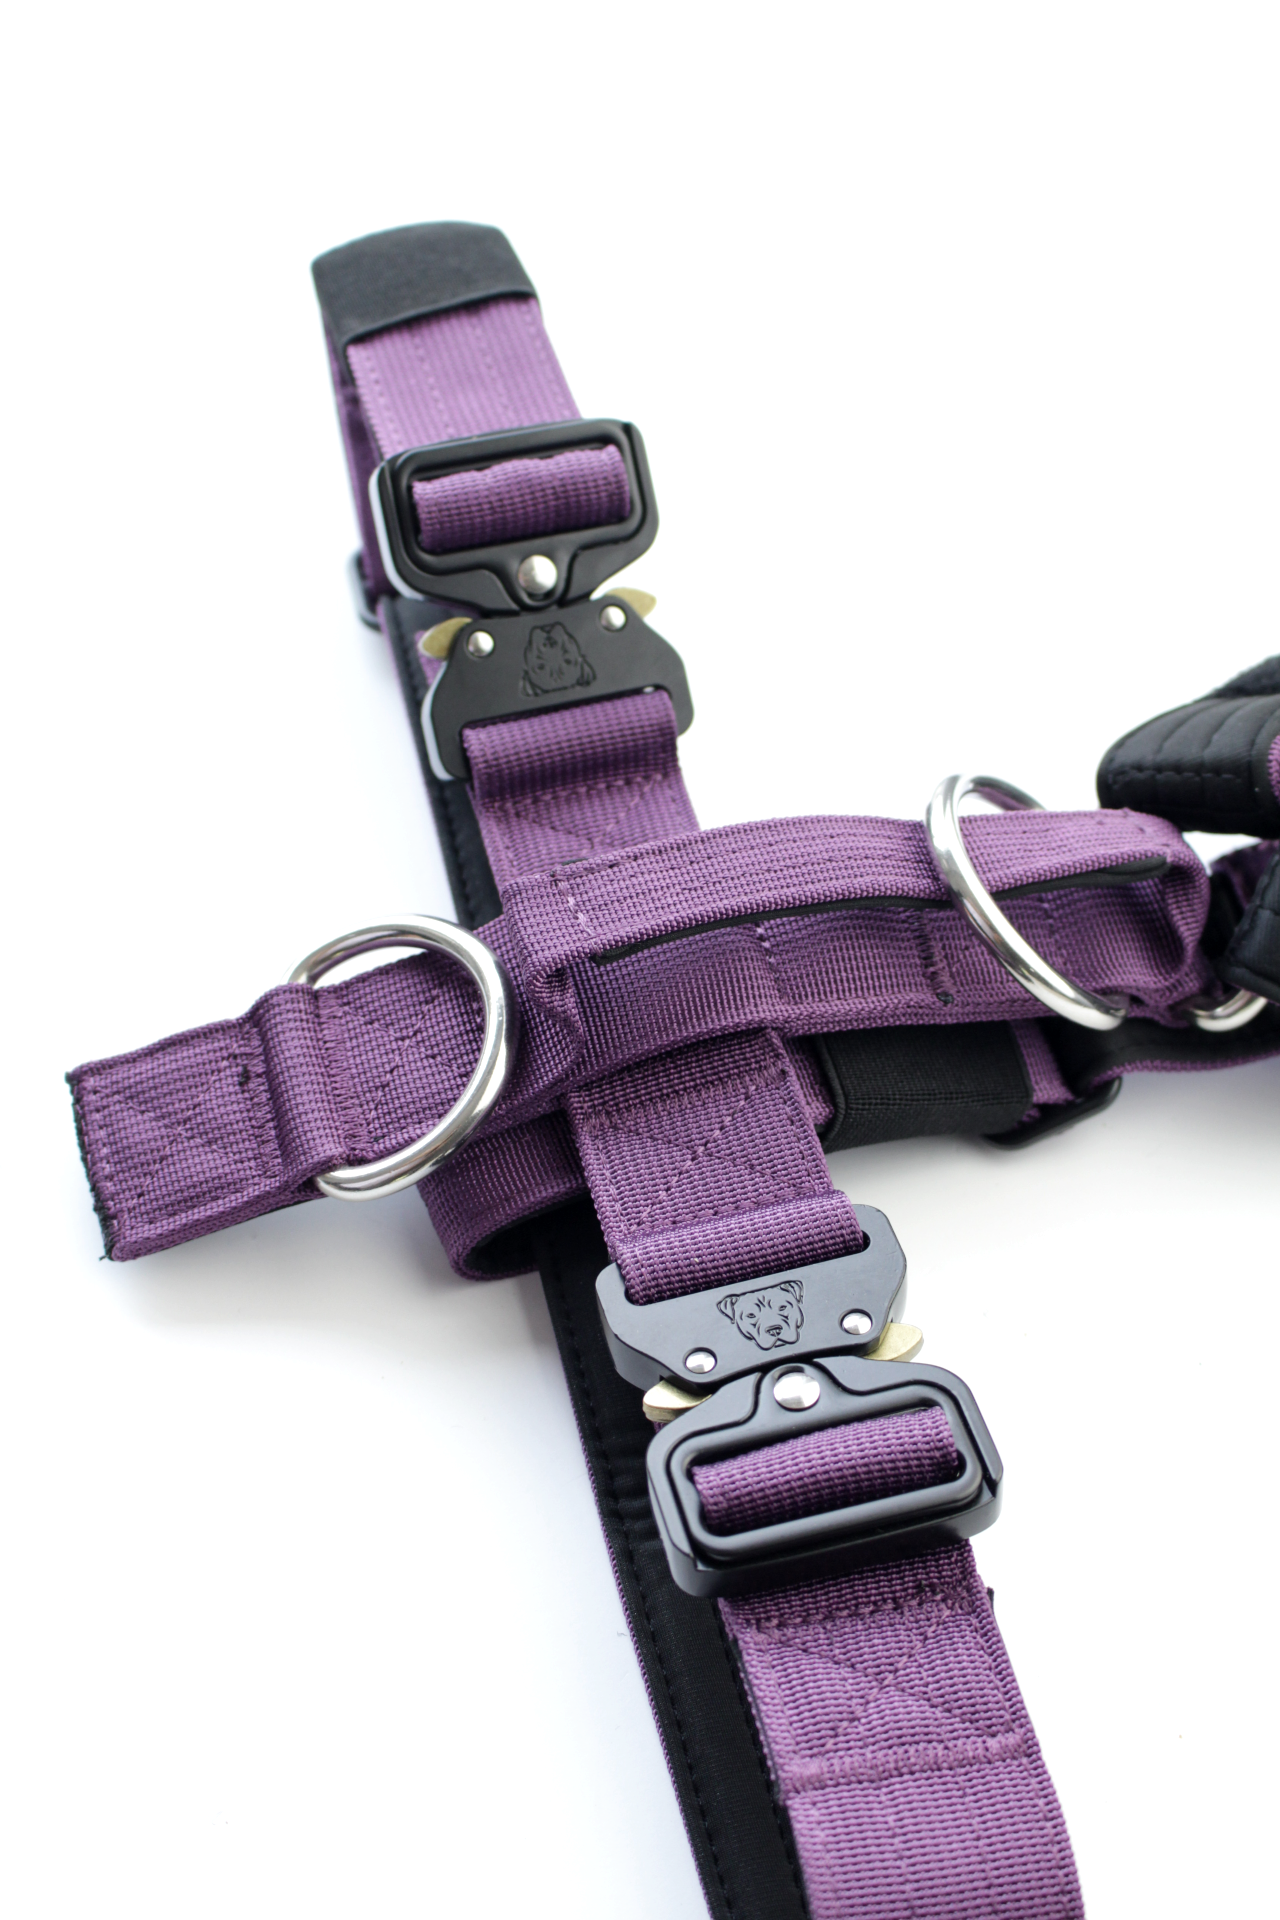 Terrain Dog Airtag Harness - Grape